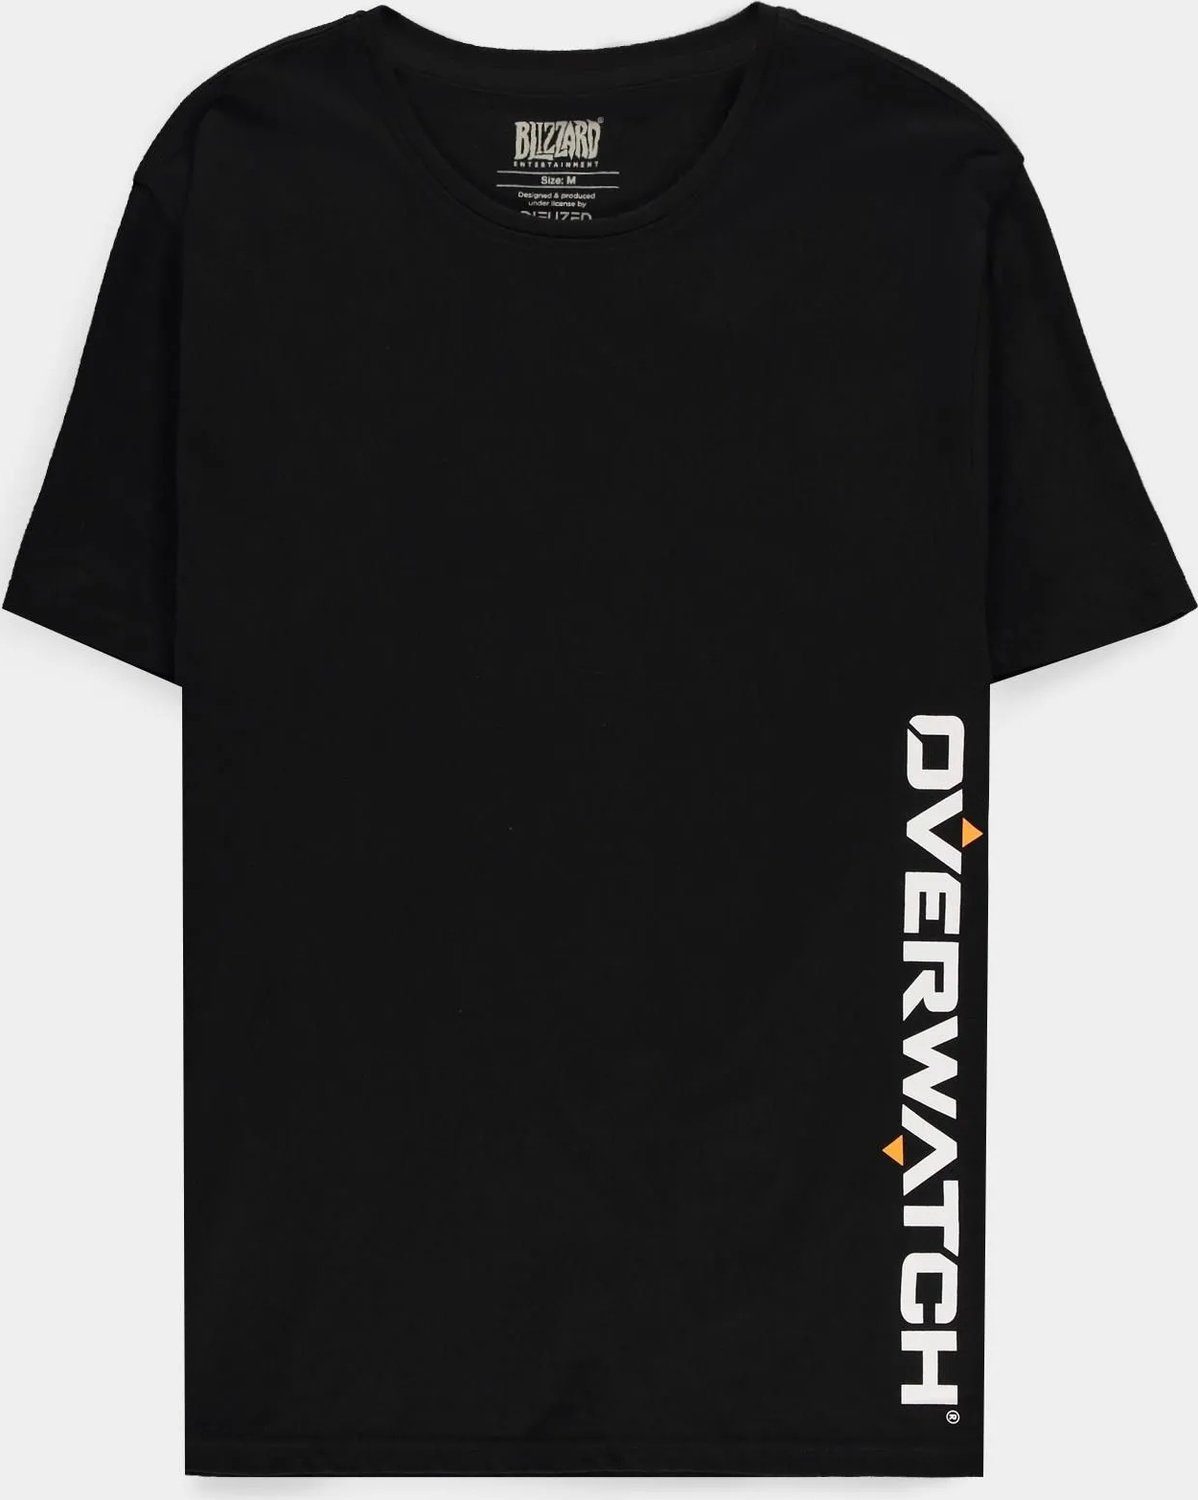 Overwatch T-Shirt Weiß